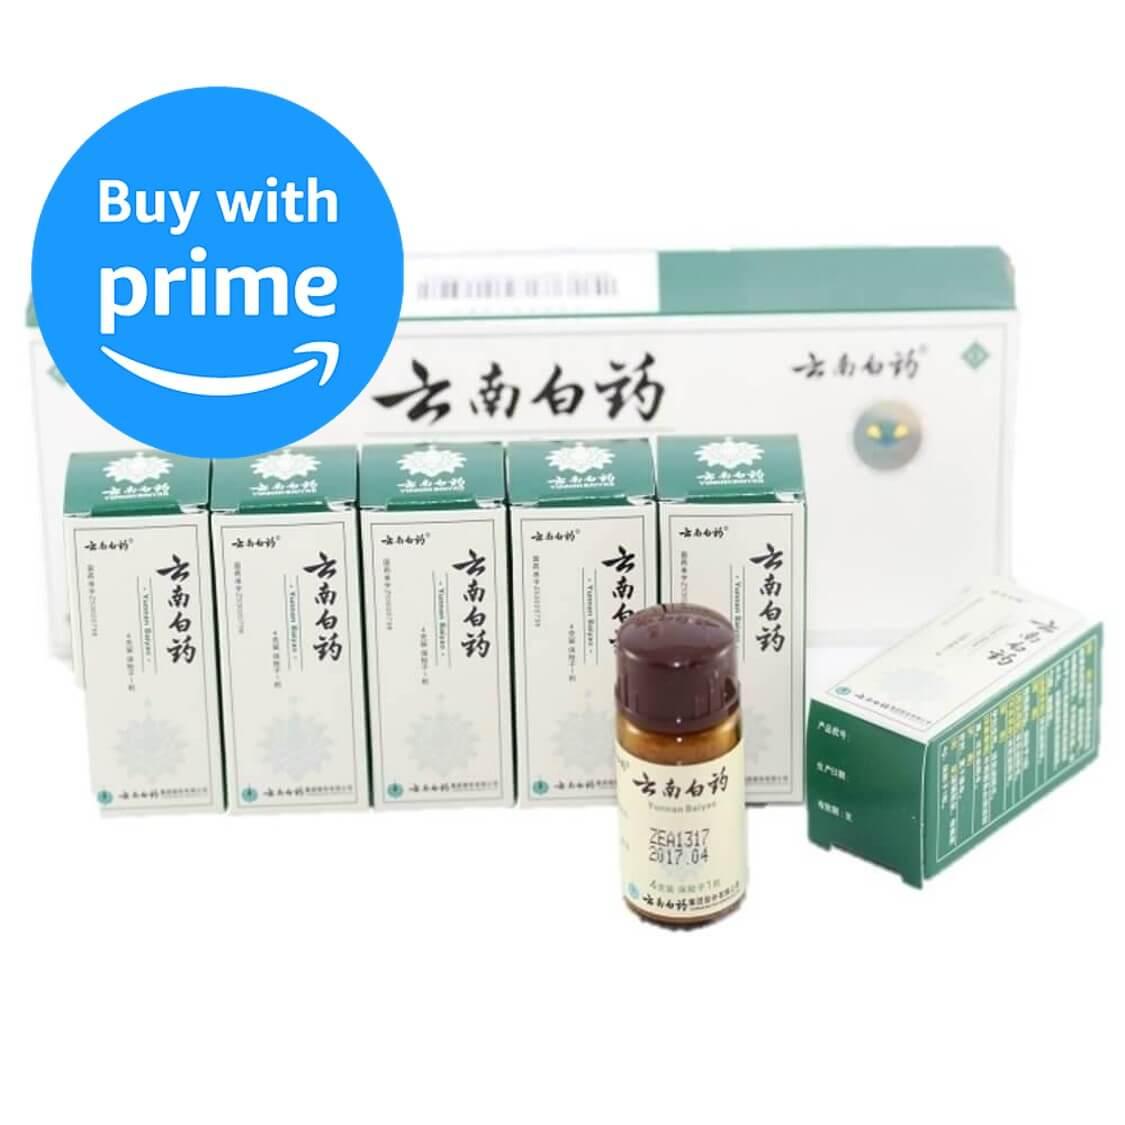 6 Boxes of Yunnan Baiyao Powder (4 Grams) - Buy at New Green Nutrition